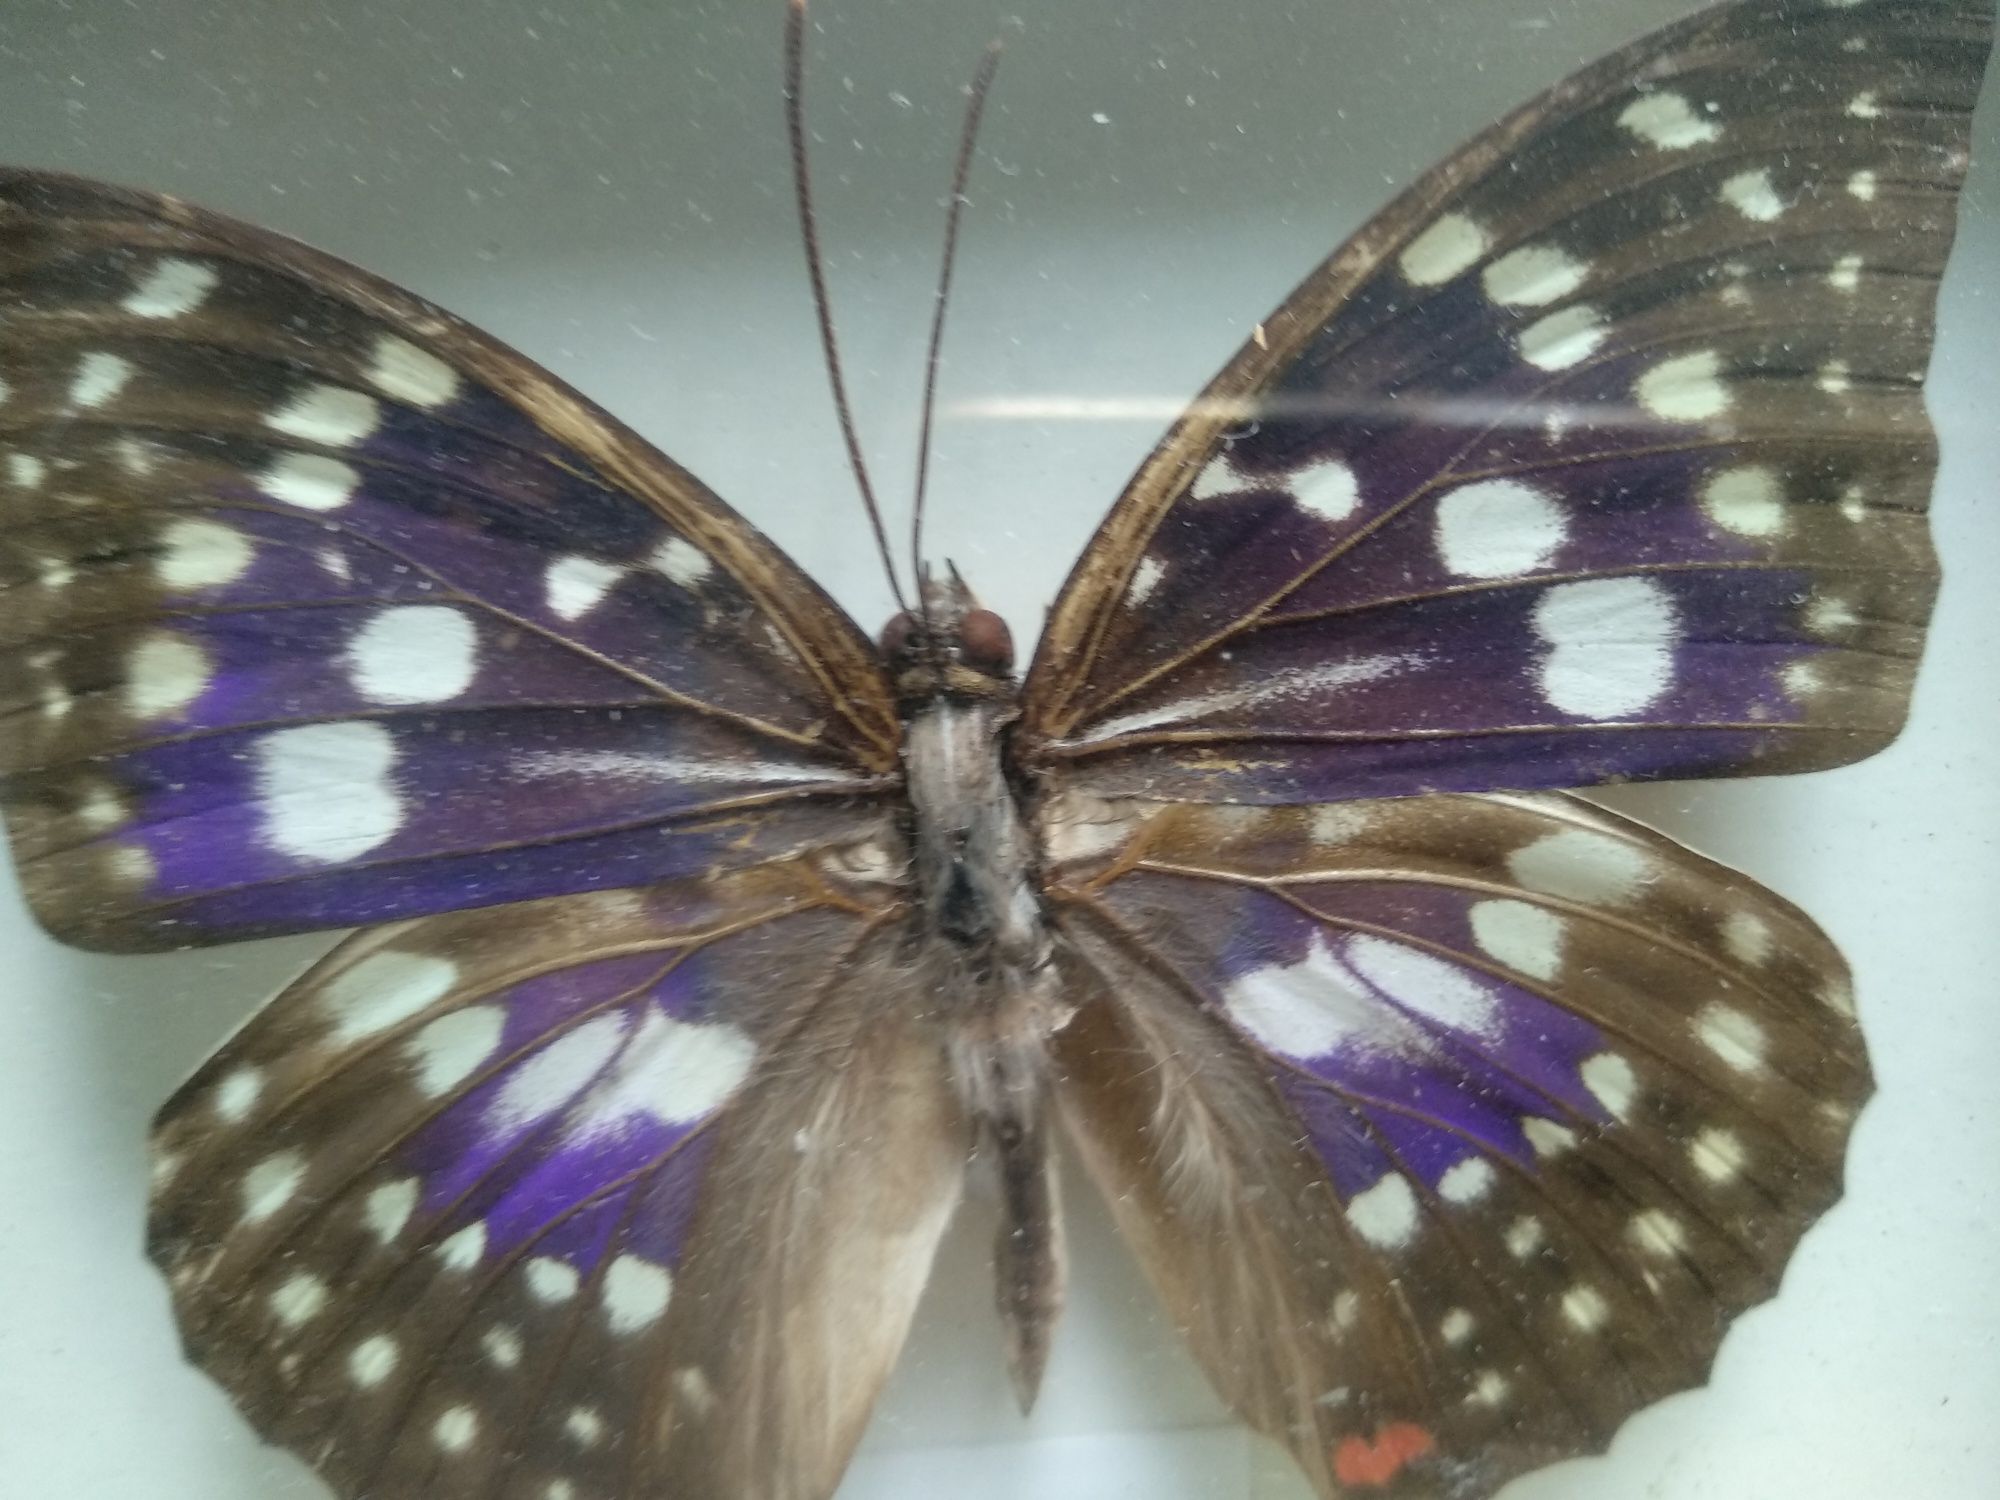 Motyl spreparowany do kolekcji